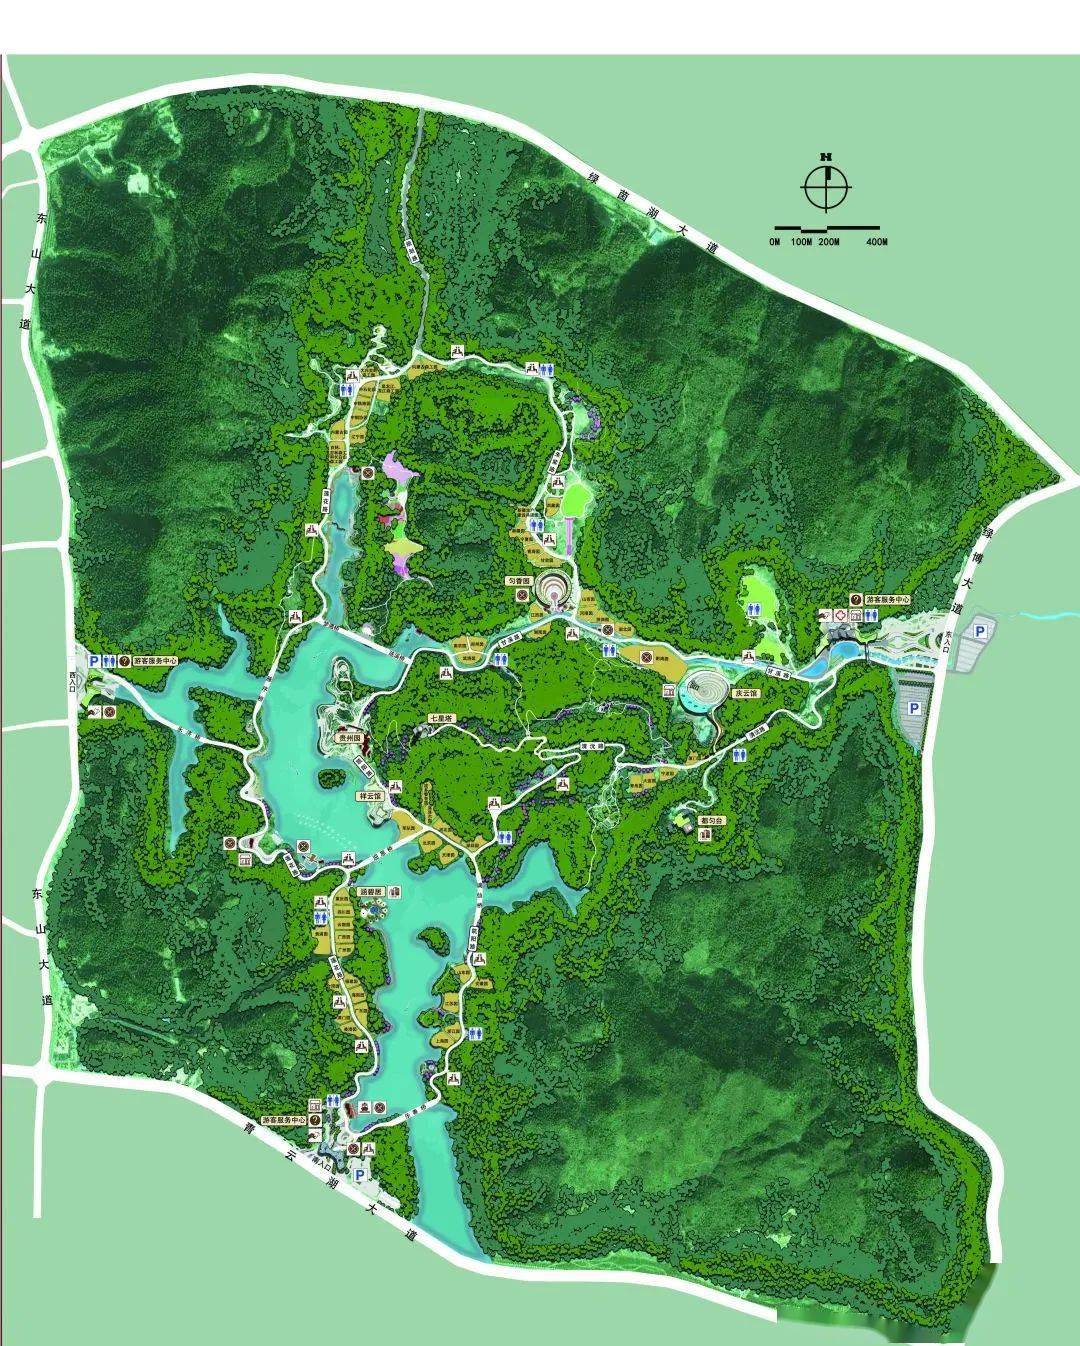 绿博园园区地图图片